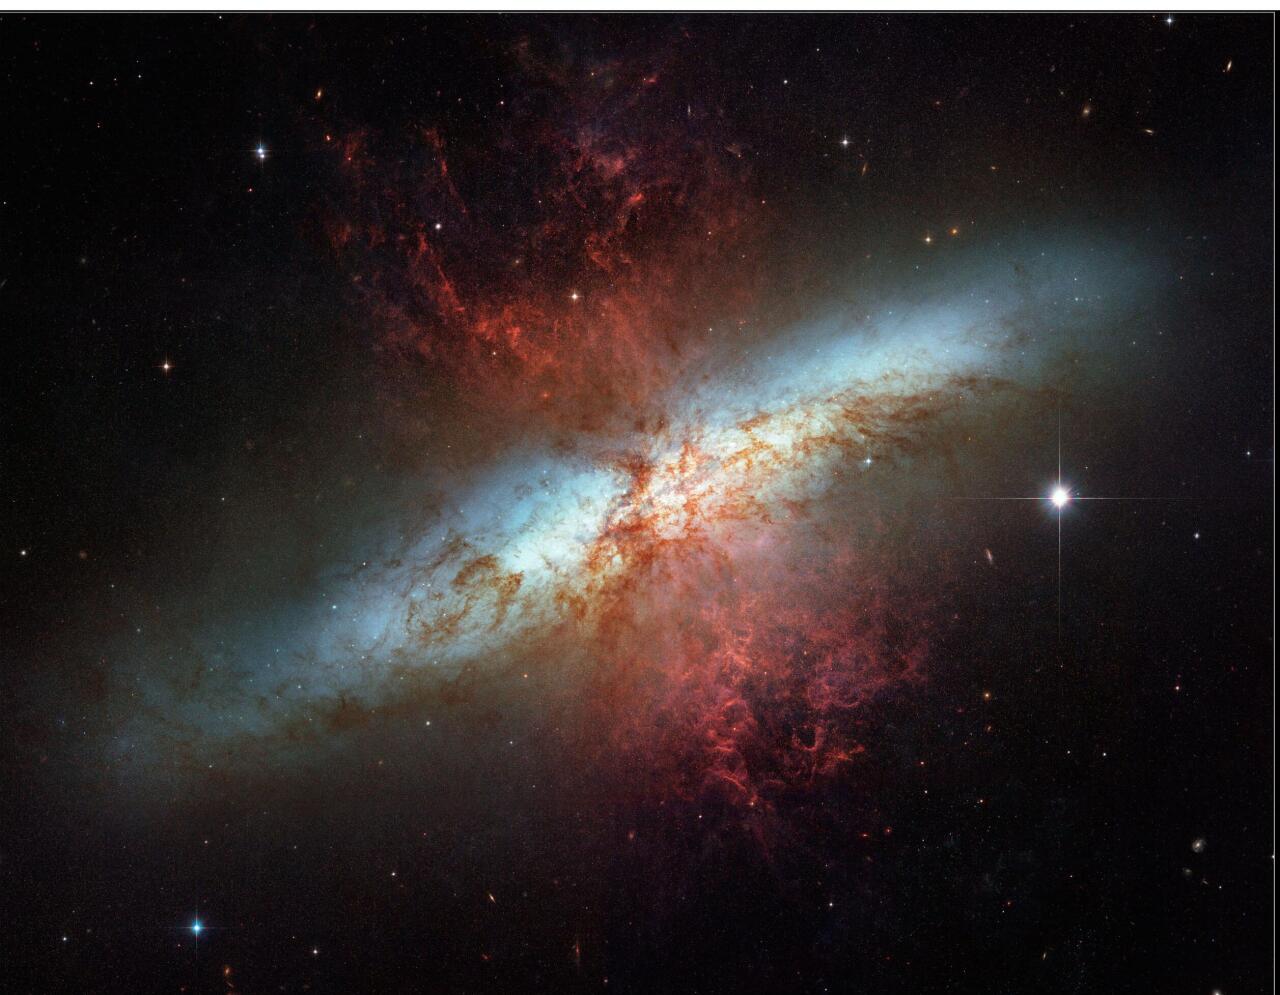 M82 galaxia irregularraren irudi ikusgaia kolore zuri eta urdinetan. Kolore gorrietan, galaxian sortzen diren izar berrien haizeak eta supernobek jaurtikitako hondakinak, hidrogenoaren igorpen-lerroen bidez irudikatuta